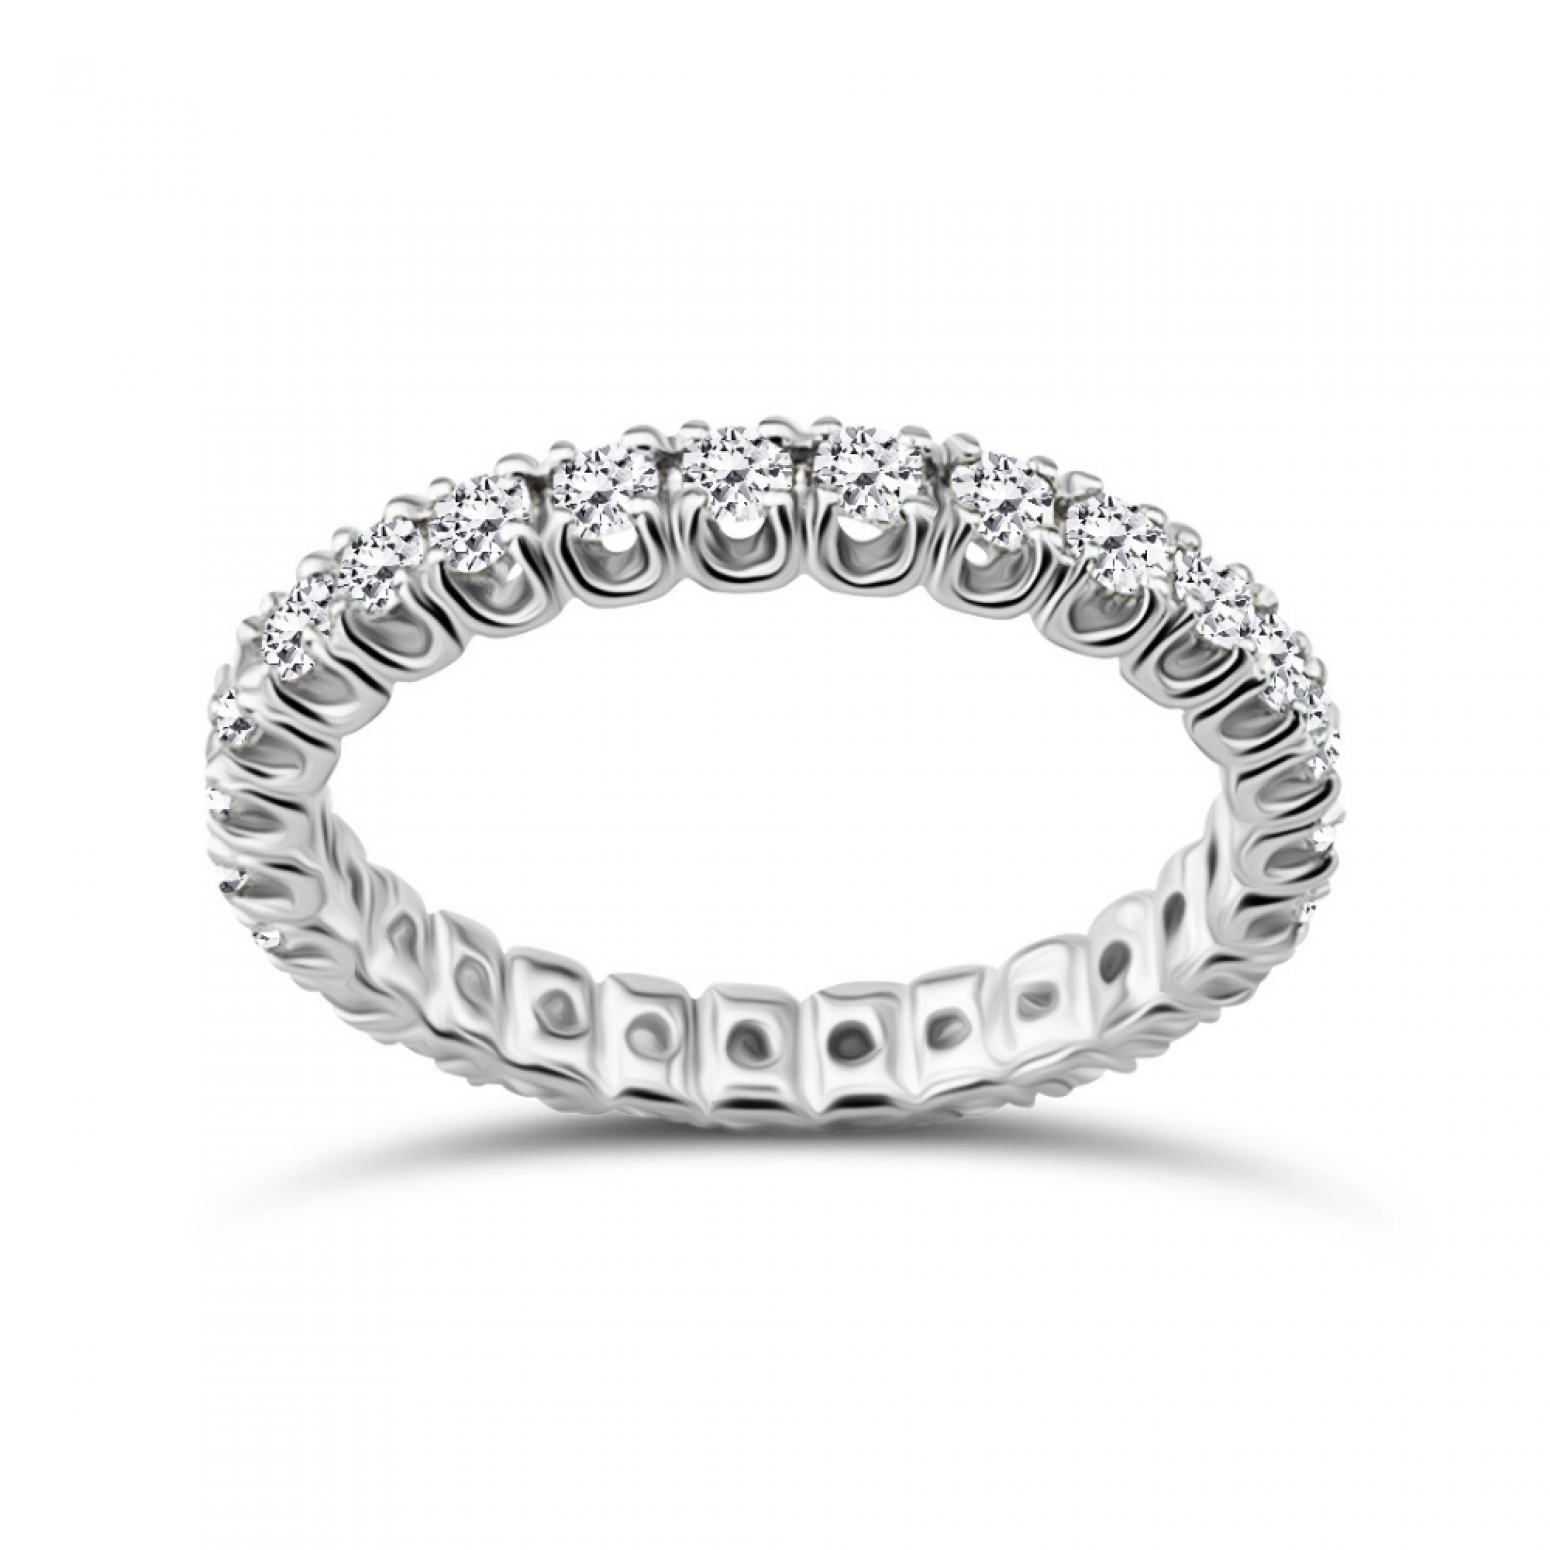 Ολόβερο Δαχτυλίδι - Ολόβερο δαχτυλίδι Κ18 λευκόχρυσο με διαμάντια 0.77ct, VVS2/VS1, F/G από το IGL da3695 ΔΑΧΤΥΛΙΔΙΑ ΑΡΡΑΒΩΝΑ Κοσμηματα - chrilia.gr